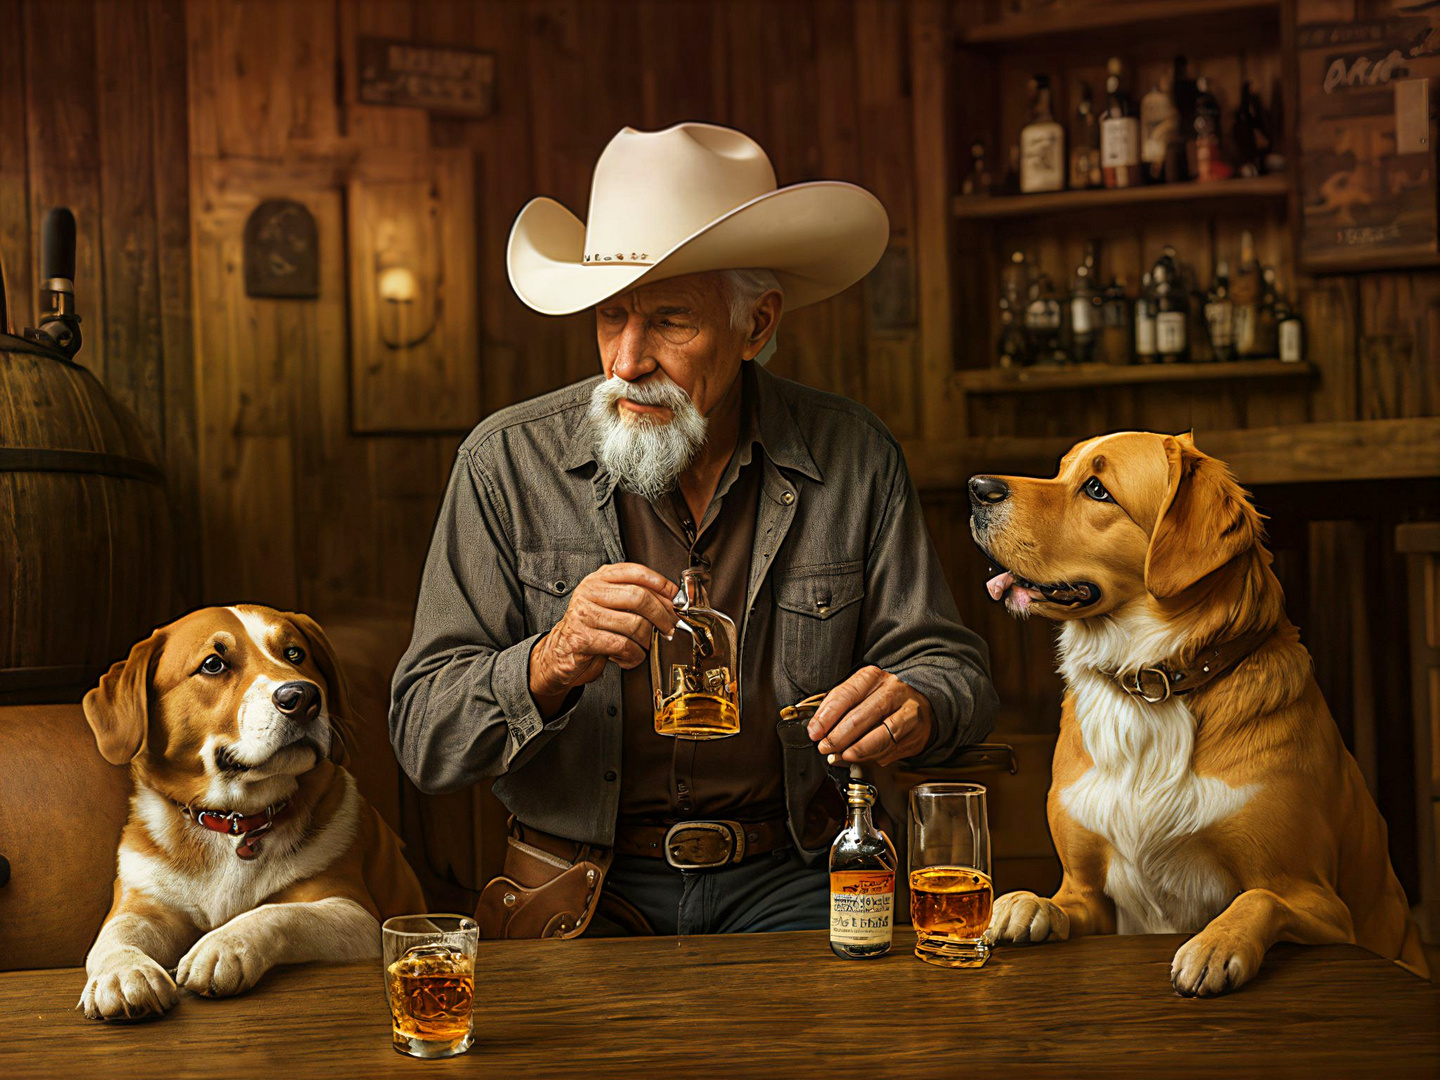 Geselliges Stilleben: Ein Mann, seine Hunde und sein Whiskey